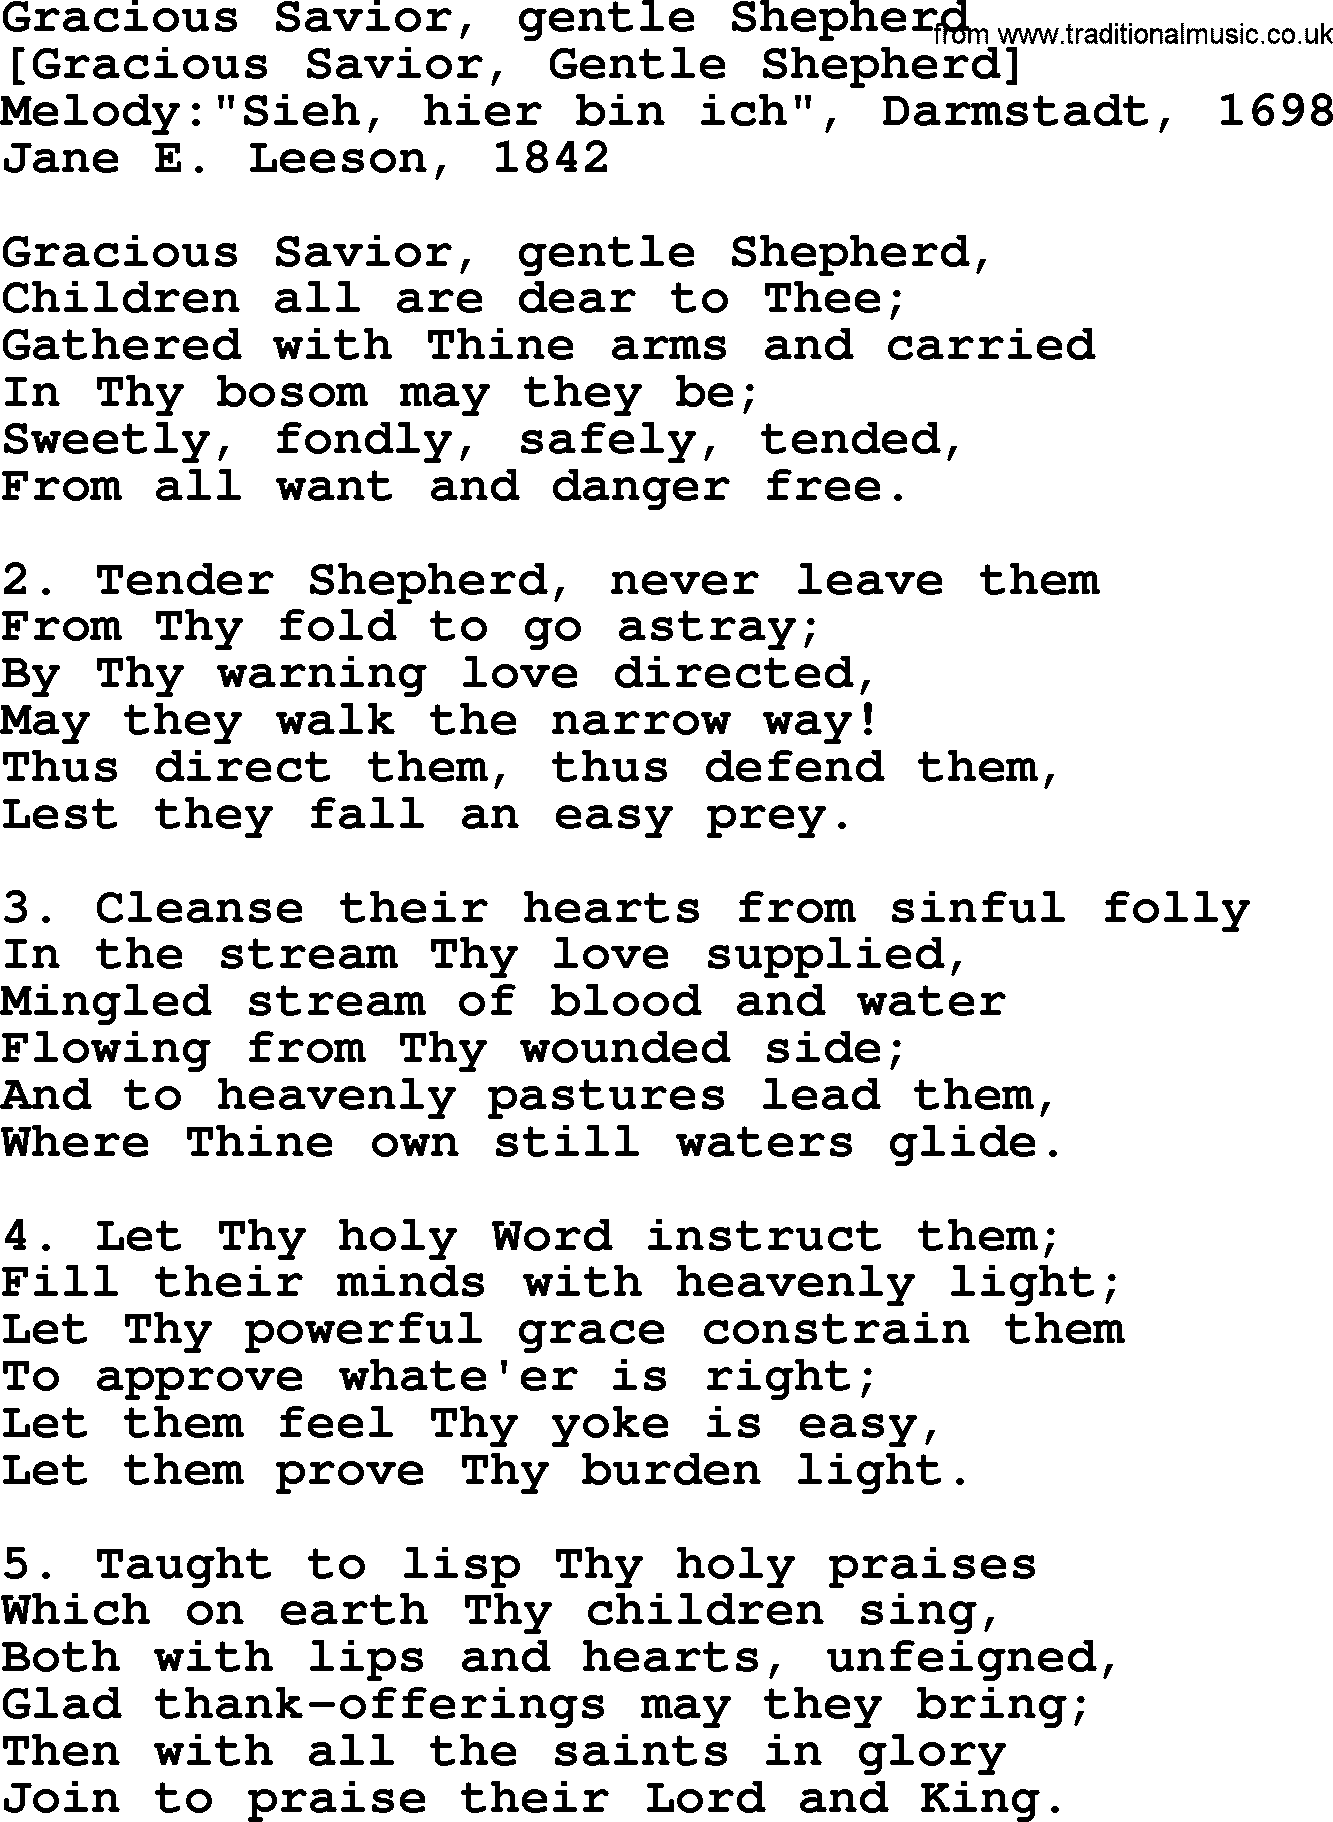 Old English Song: Gracious Savior, Gentle Shepherd lyrics